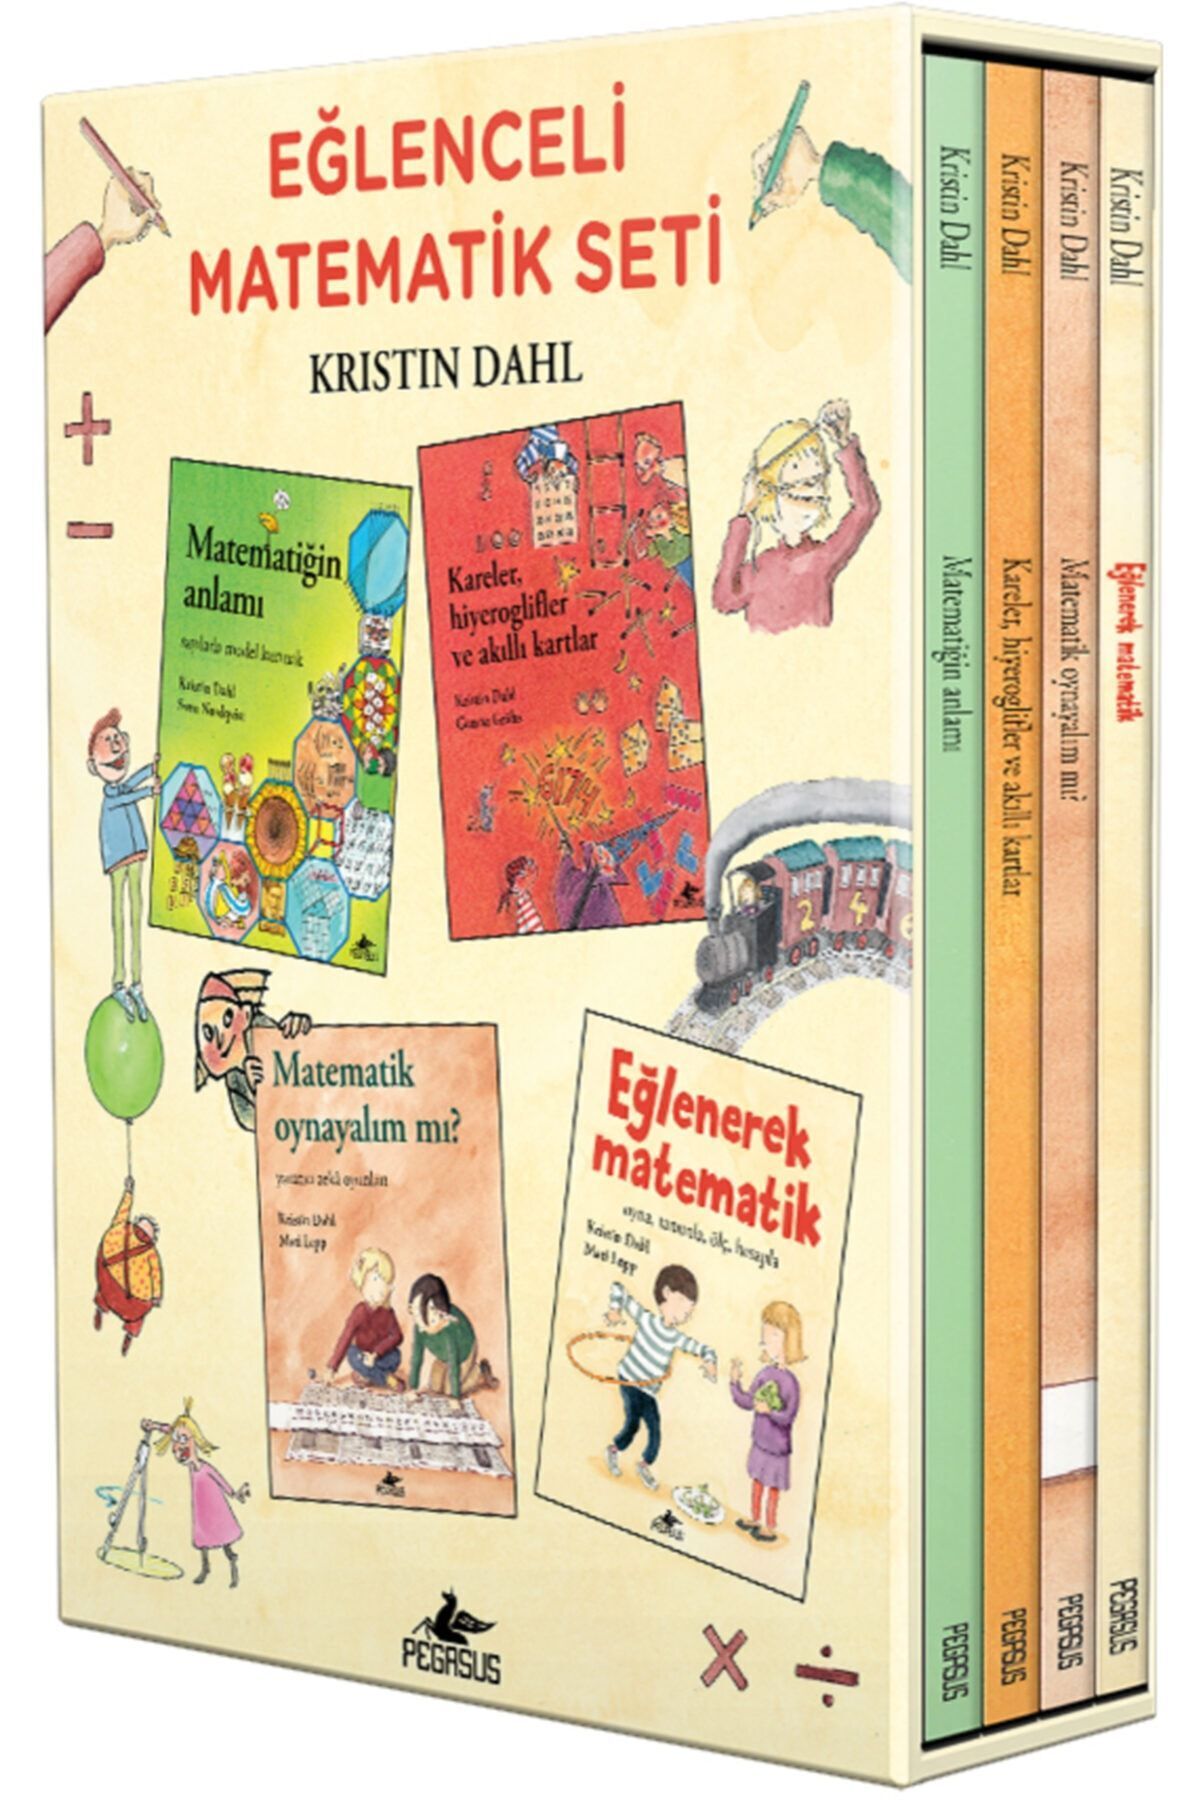 Pegasus Yayınları Eğlenceli Matematik Kutulu Özel Set (4 KİTAP) - Kristin Dahl